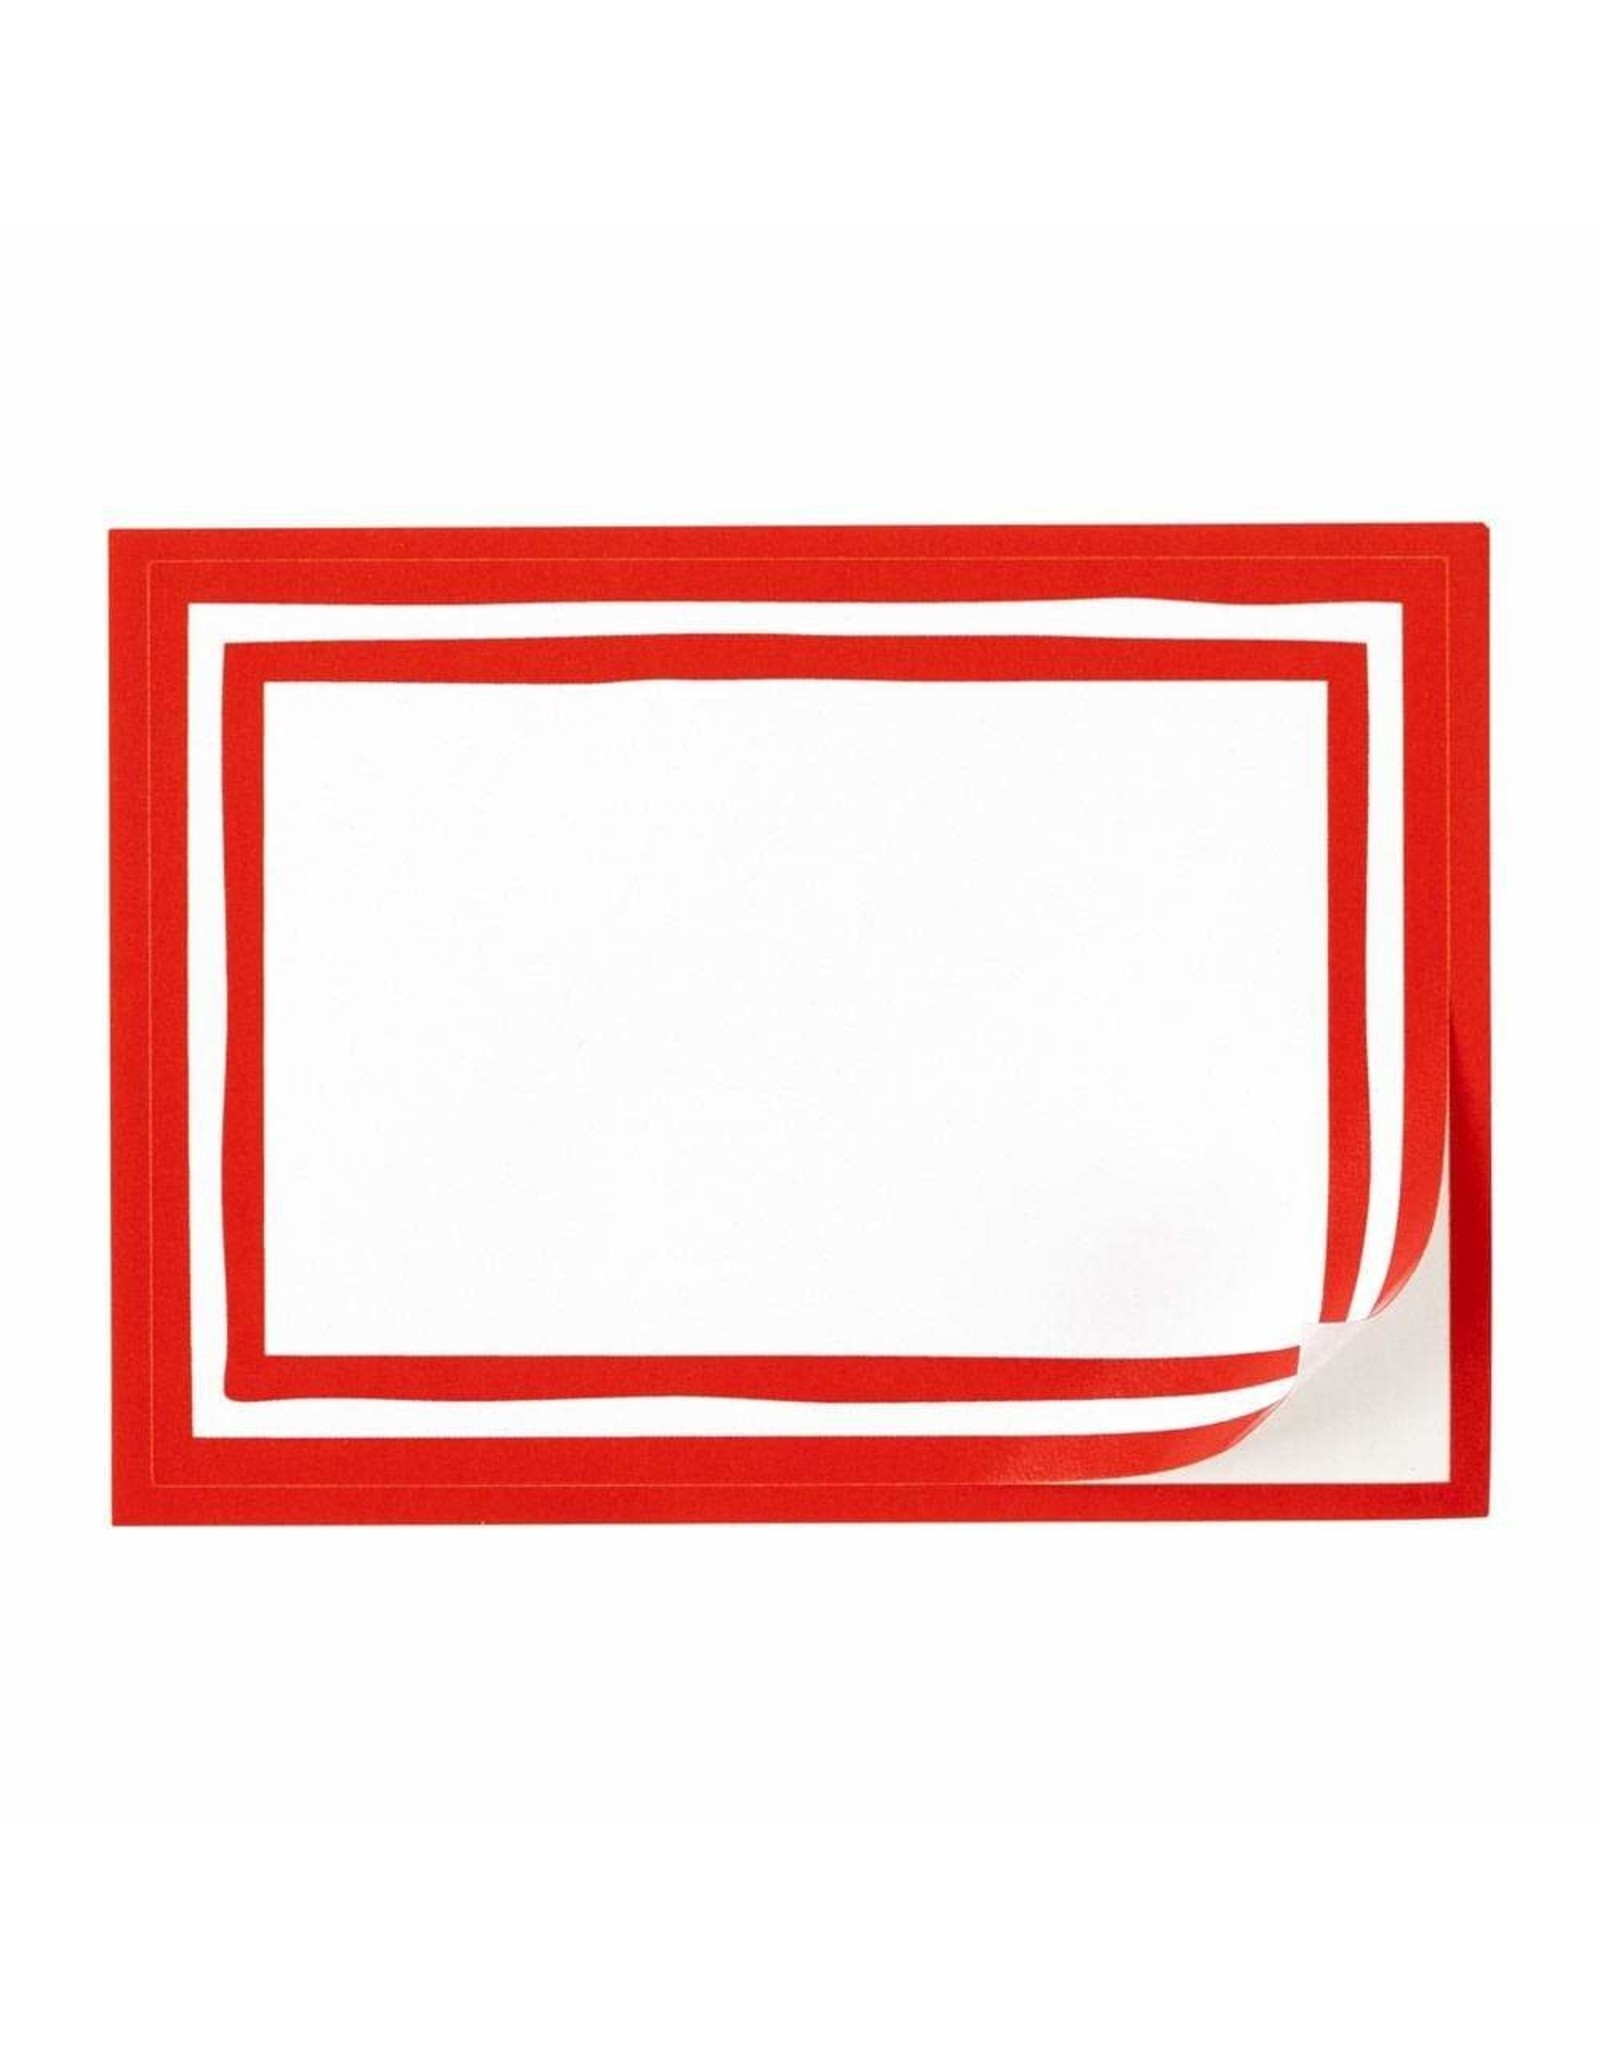 Caspari Name Tags Self Adhesive Labels 12pk Stripe Border Red